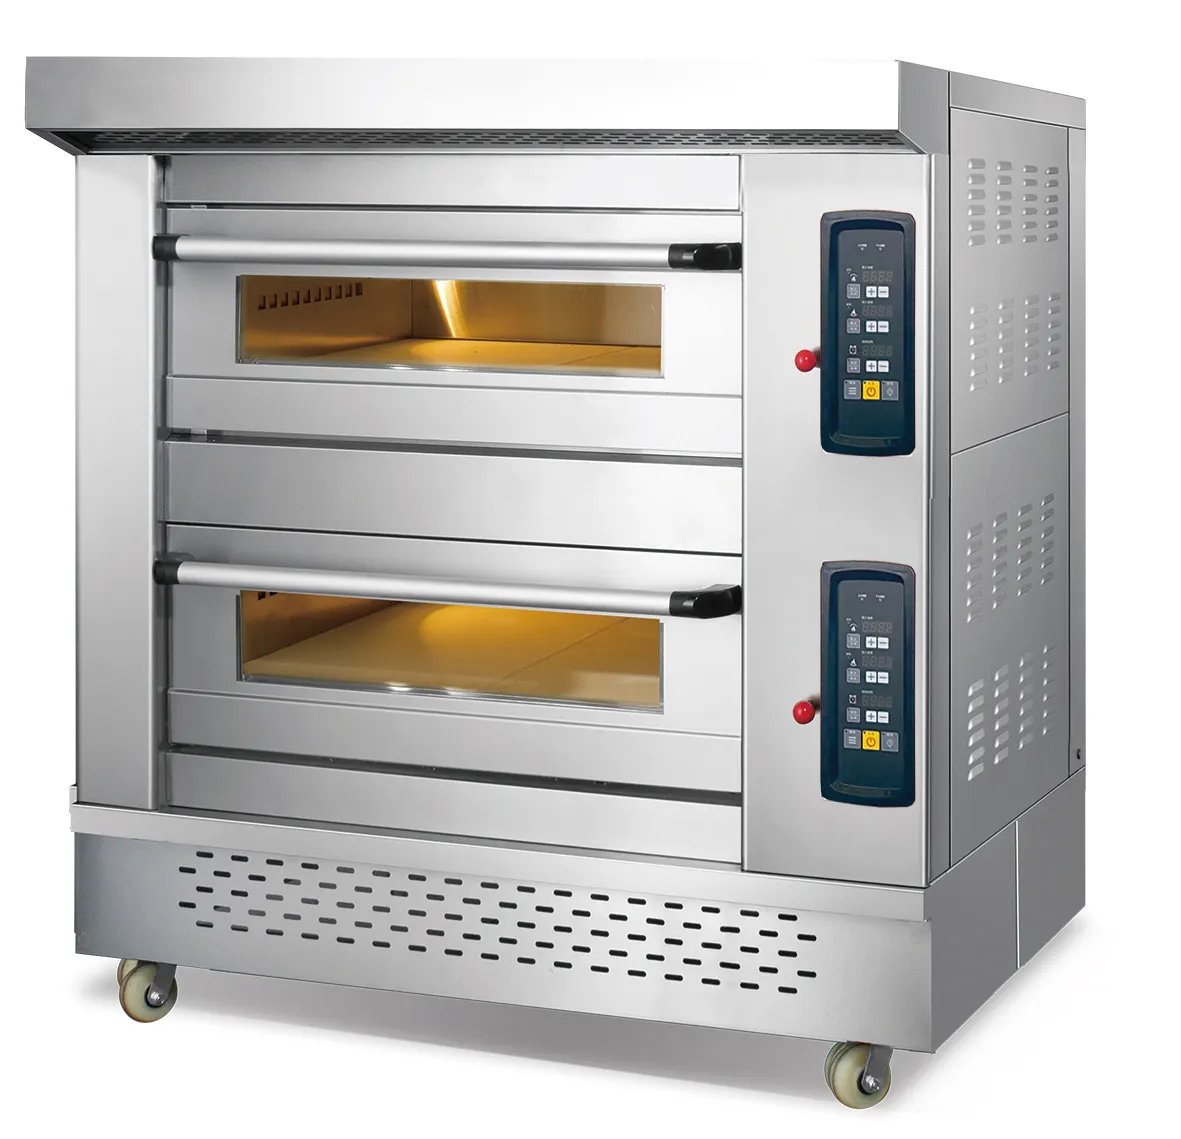 OEM 공장 쉬운 이동하는 상업적인 빵집 기계 피자 빵 굽기 2 갑판 가스 오븐